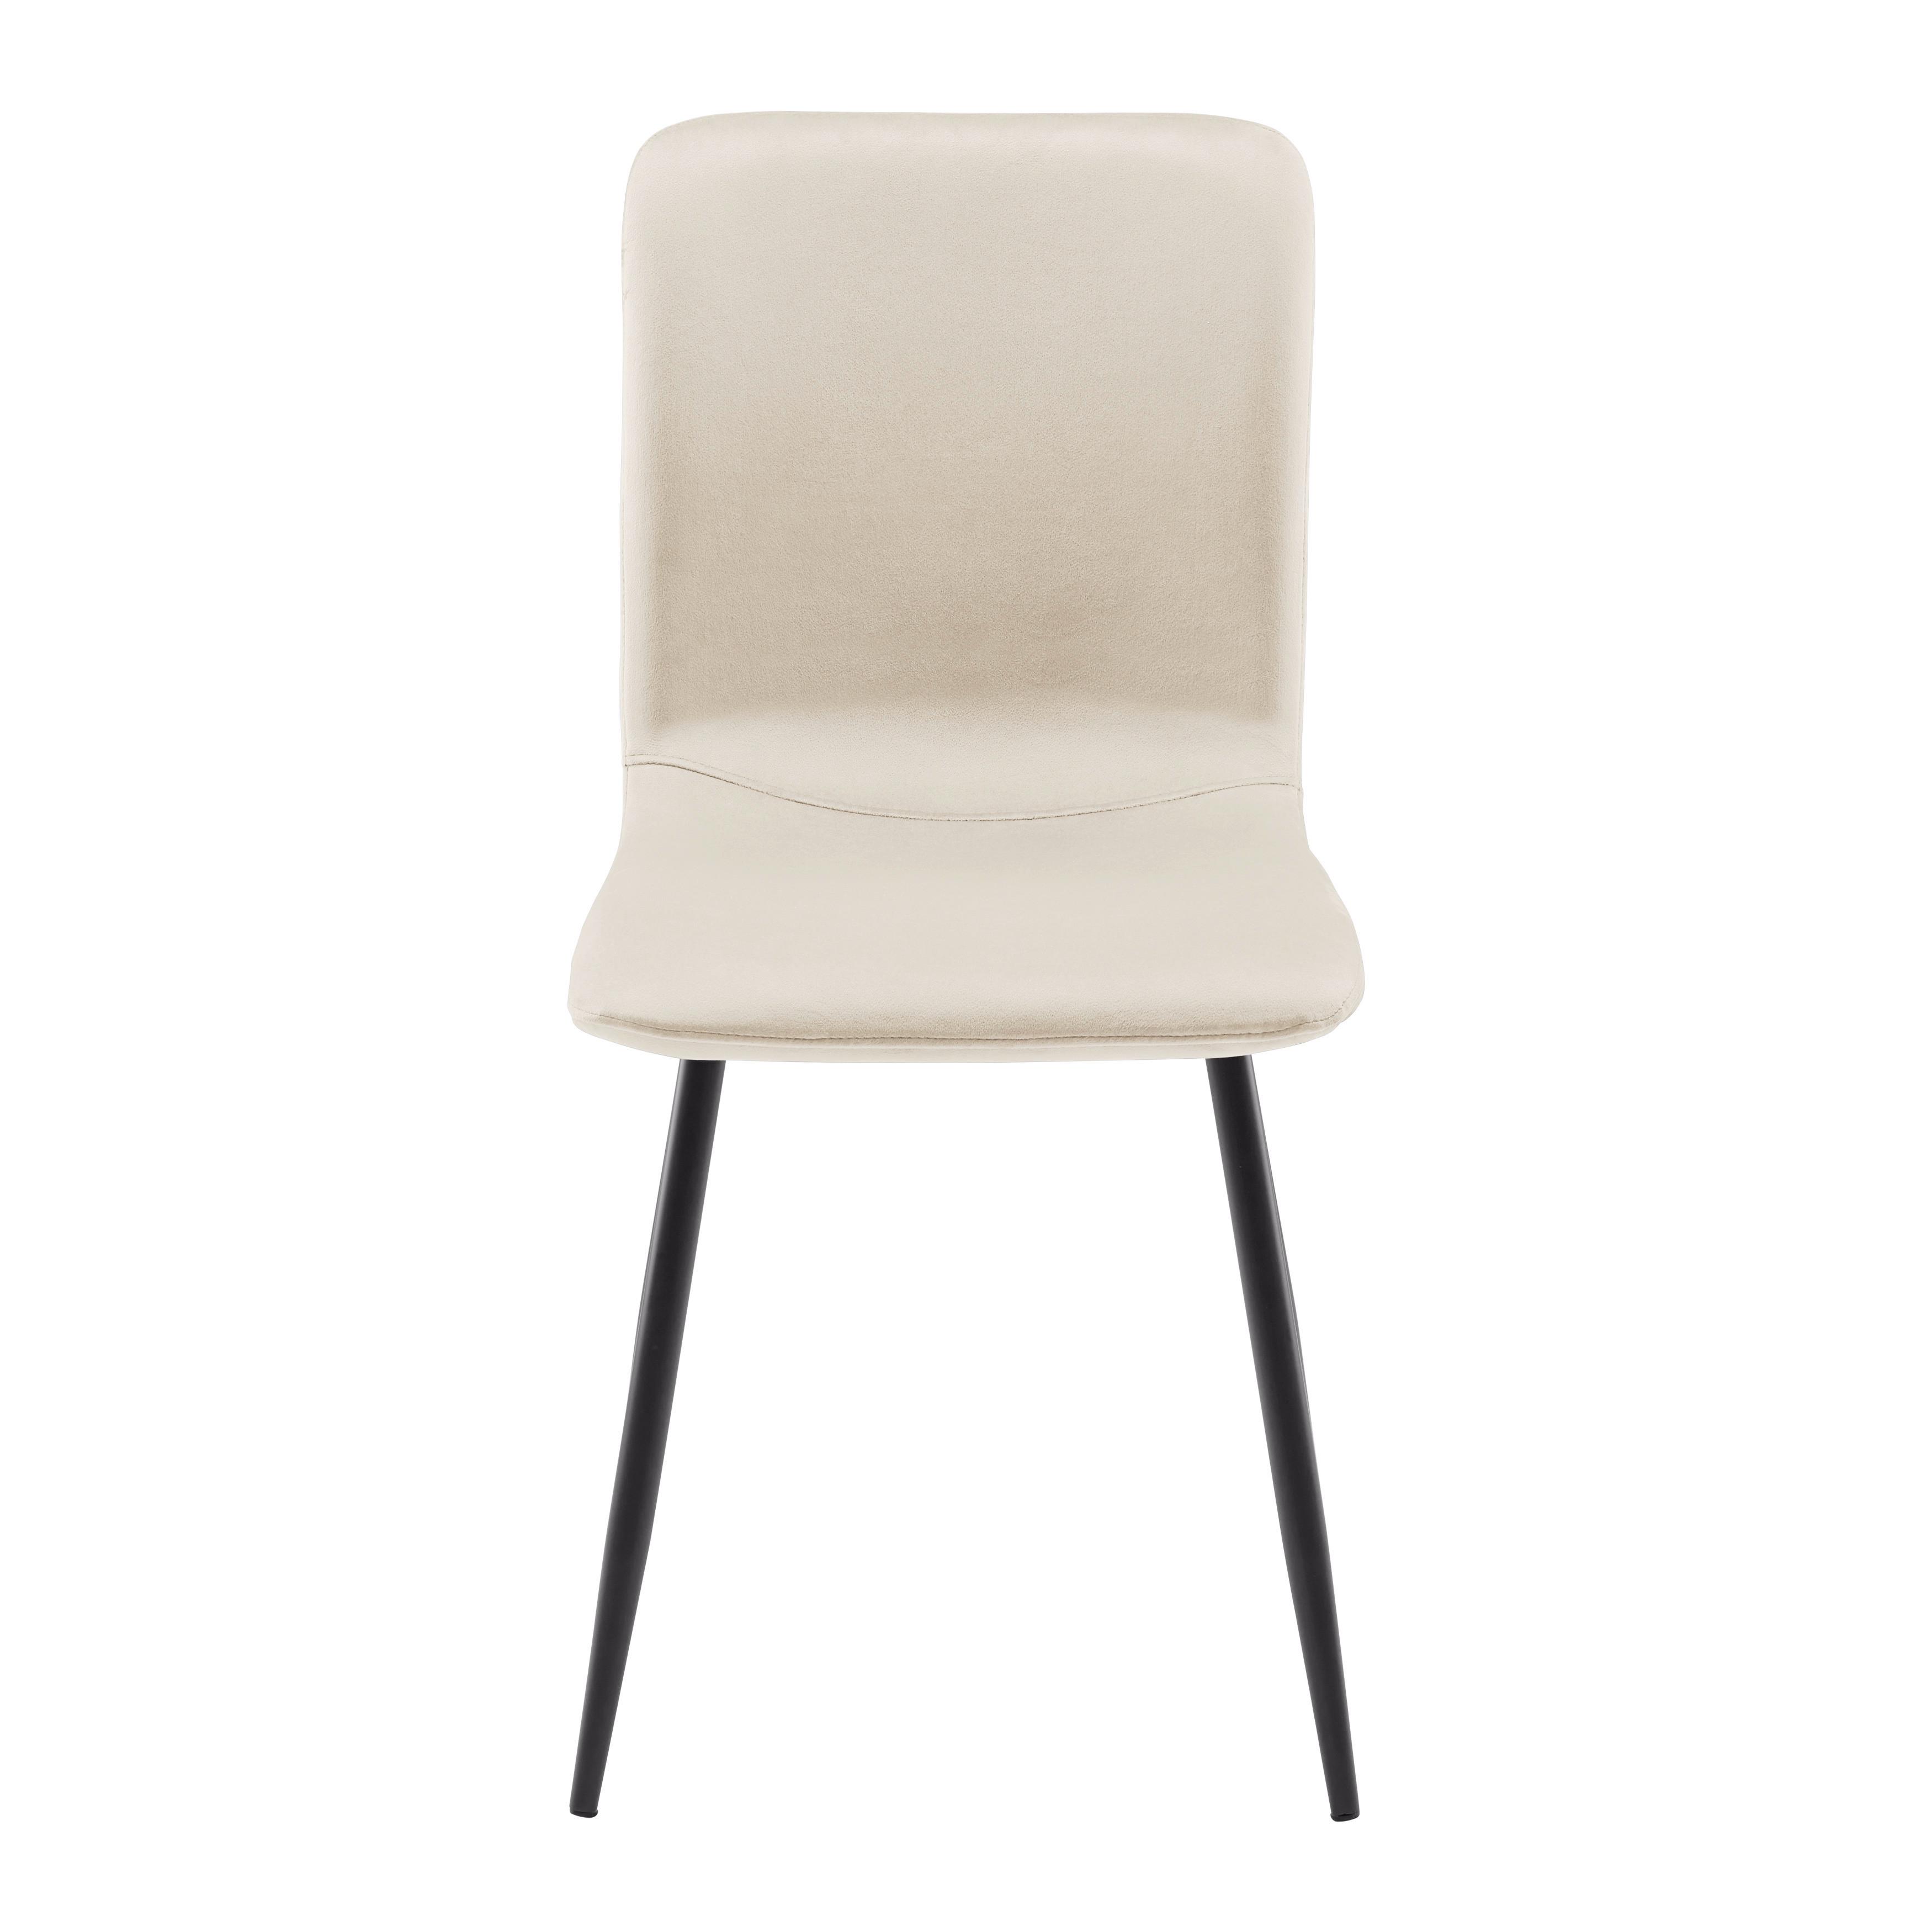 Moderní Jídelní Židle Elif Béžová - tmavě šedá/béžová, Moderní, kov/textil (43/86/55cm) - P & B